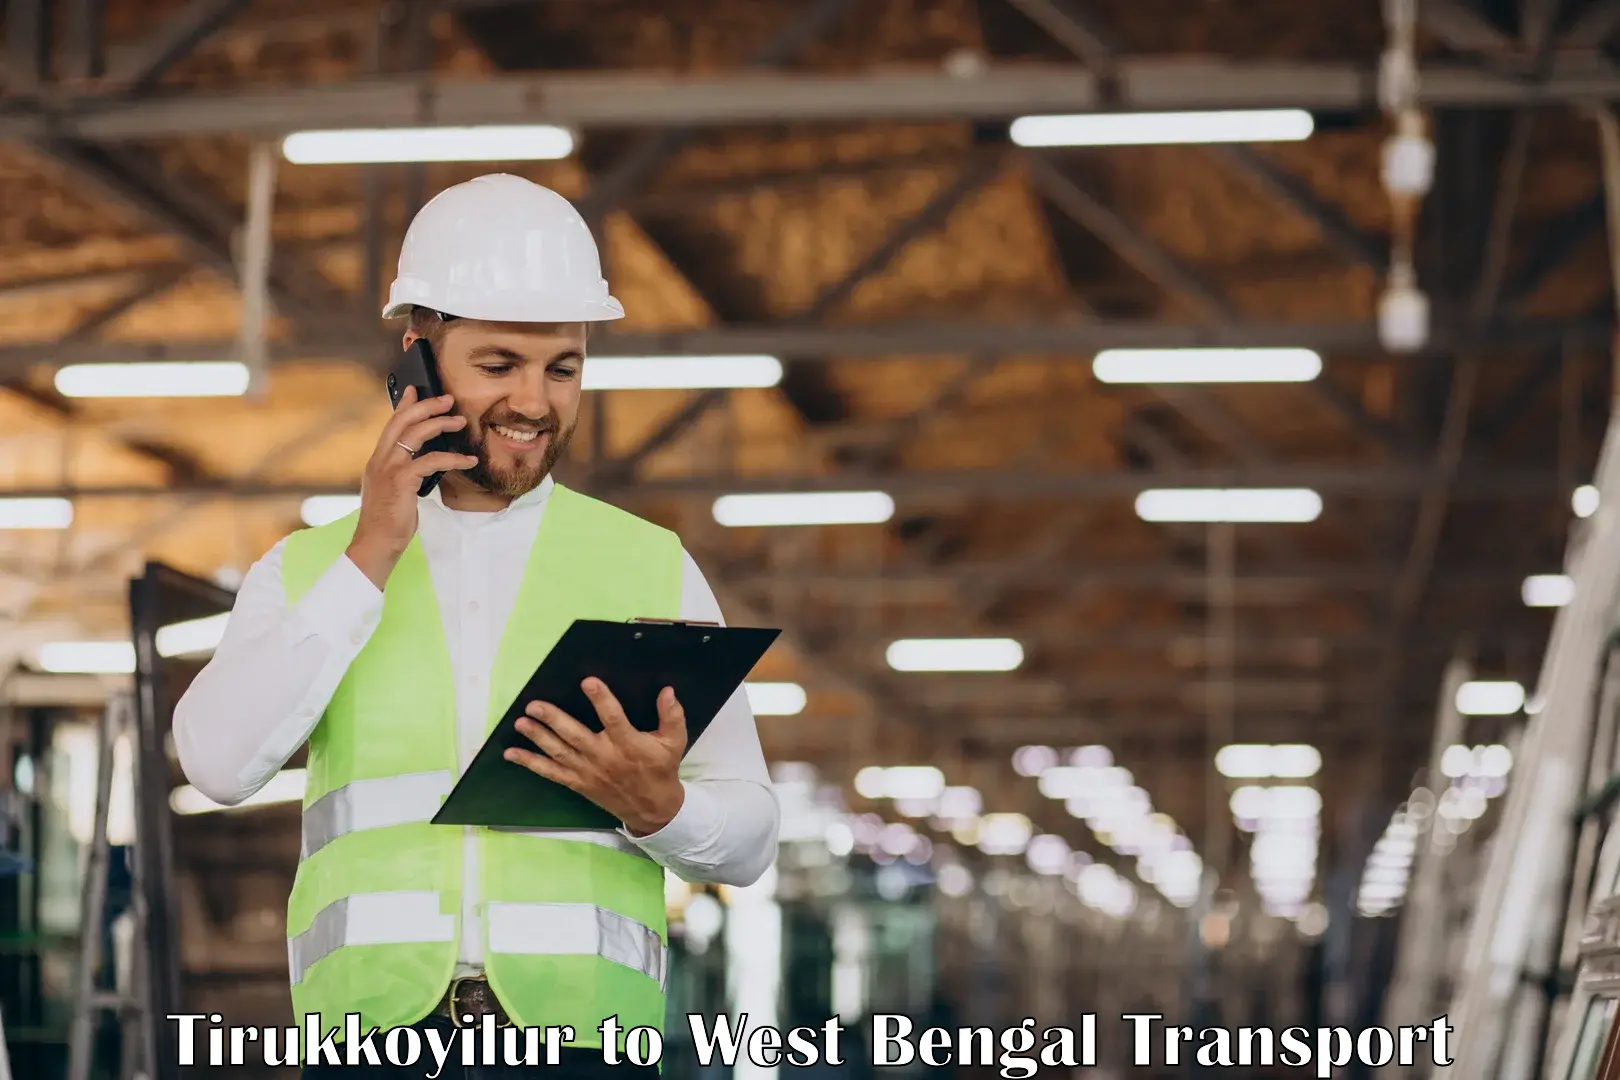 Furniture transport service Tirukkoyilur to Kolkata Port